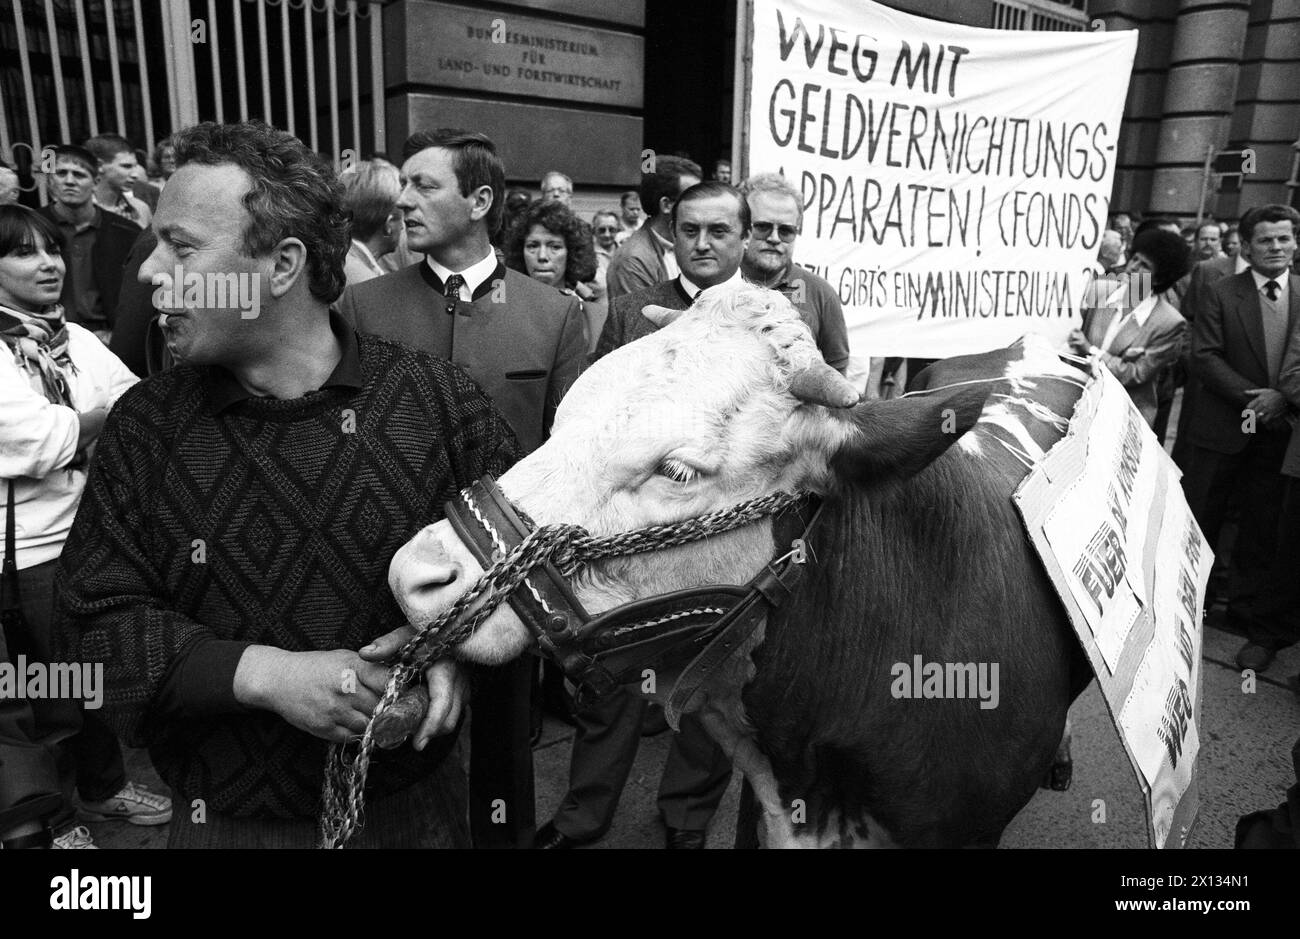 Vienna il 27 settembre 1989: Dimostrazione di 500 fino a 600 agricoltori davanti al ministero dell'agricoltura. - 19890927 PD0014 - Rechteinfo: Diritti gestiti (RM) Foto Stock